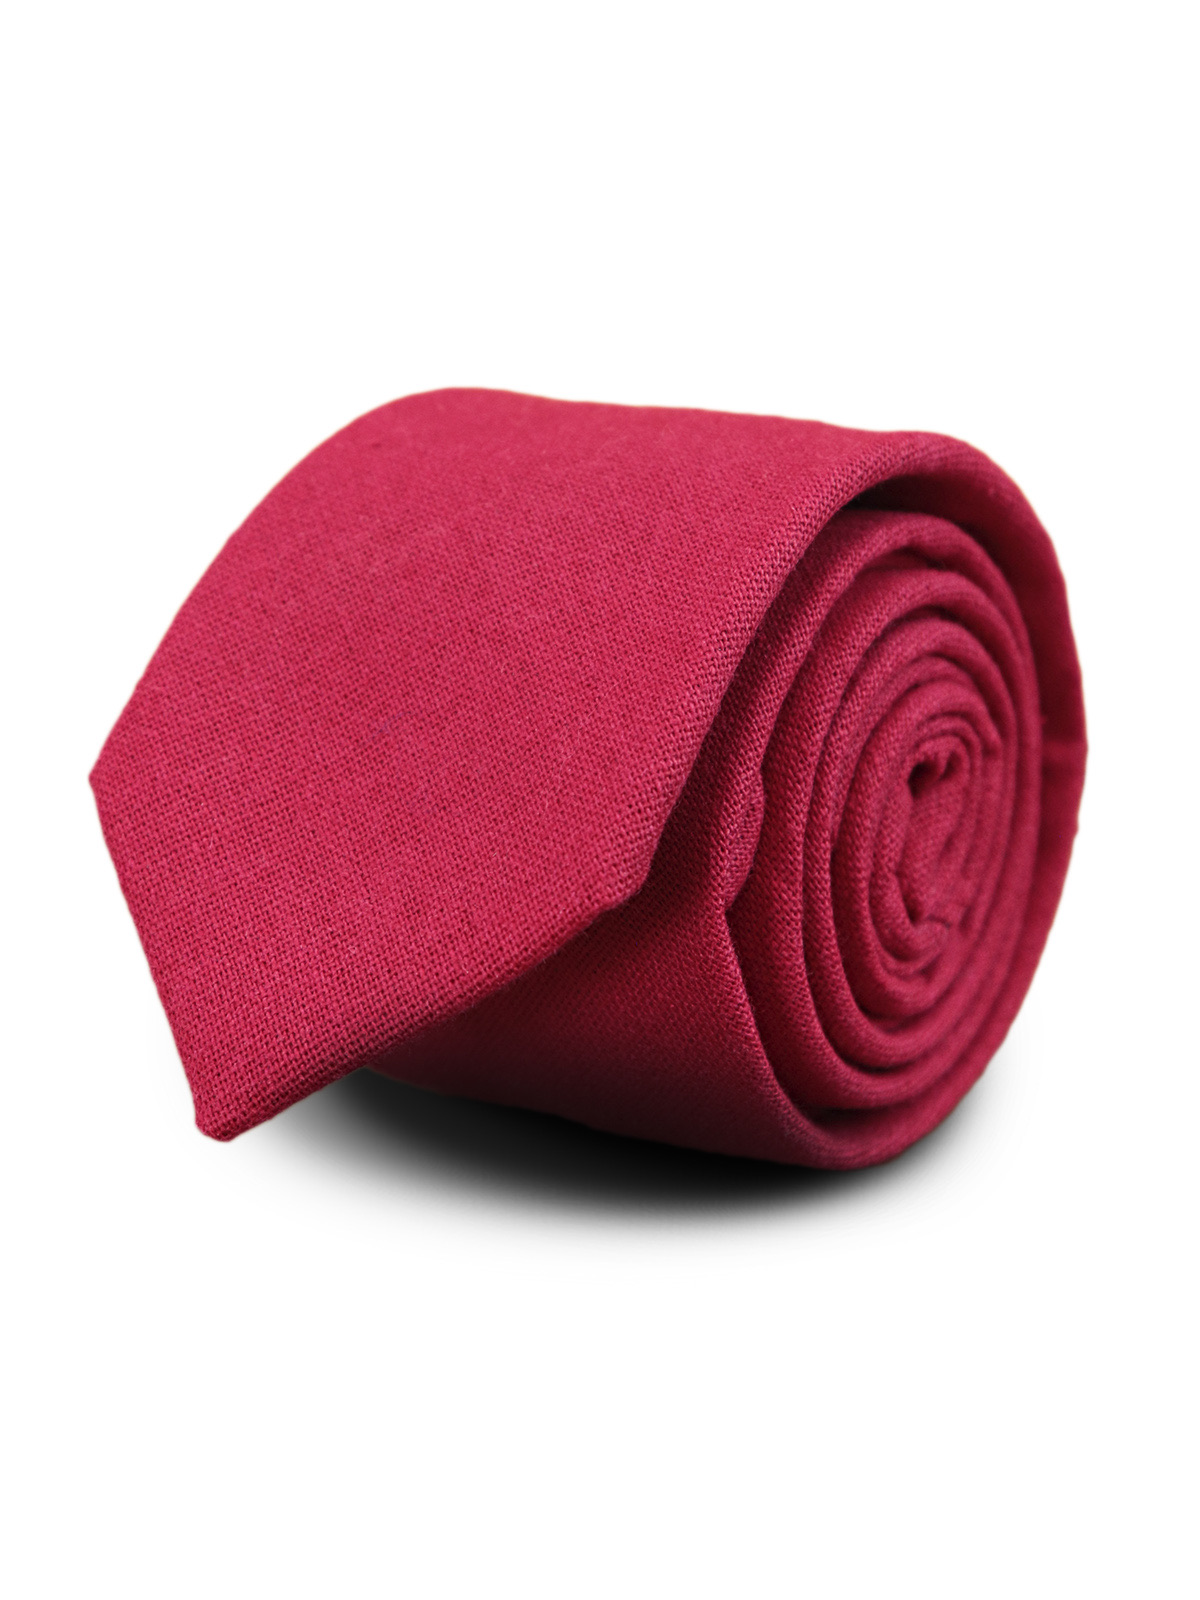 Галстук матовый однотонный красный описание: Фасон - Узкий галстук, Материал - Хлопок, Цвет - Красный, Размер - 5,5 см х 144 см, Страна производства - Турция.